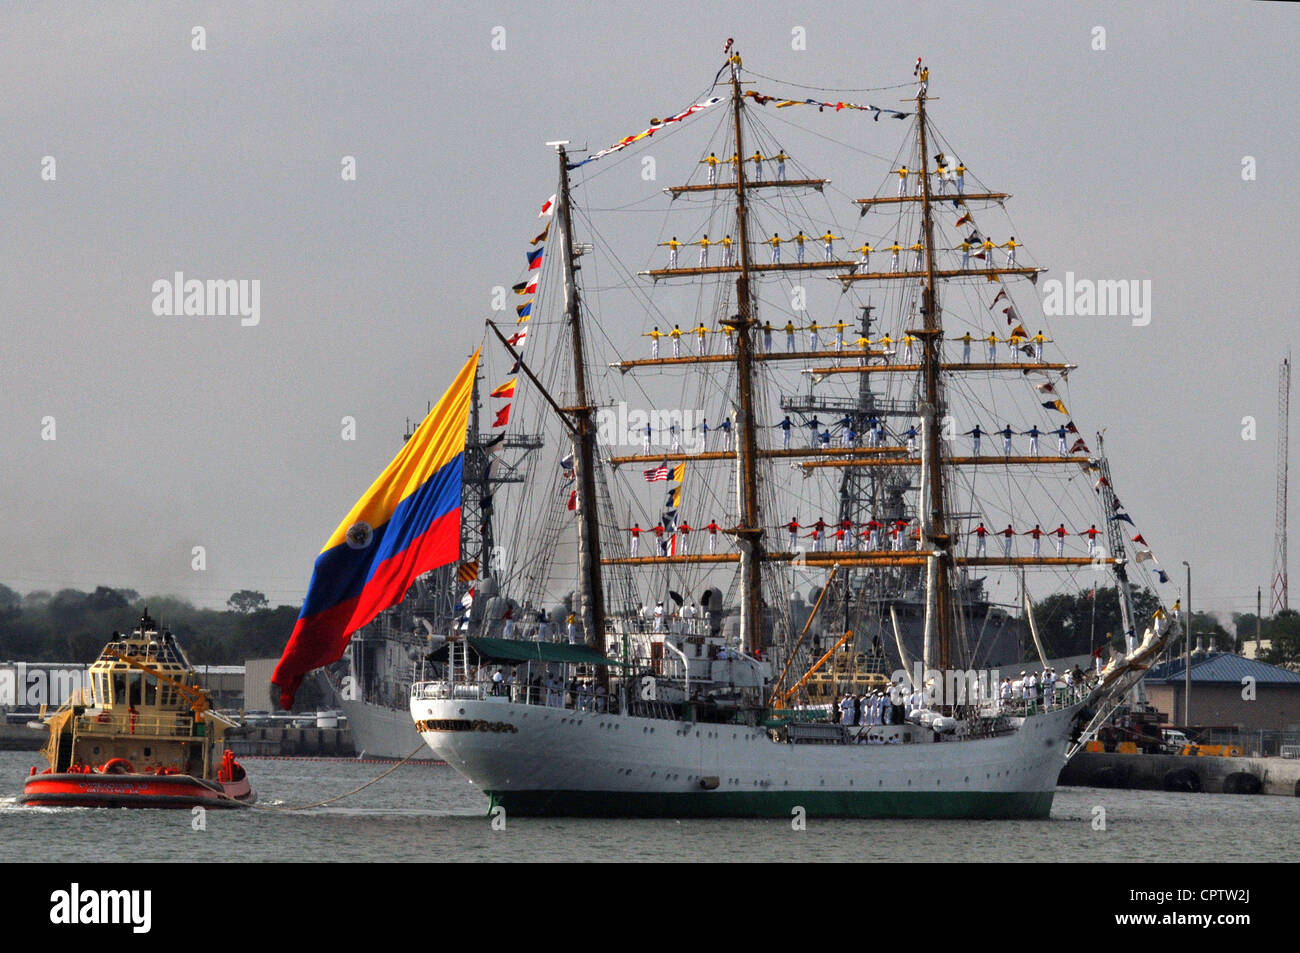 Il barque a tre alberi della marina colombiana ARC Gloria arriva alla base navale di Mayport per una visita al porto programmata. Gloria è la nave da addestramento del cadetto della marina colombiana. Foto Stock